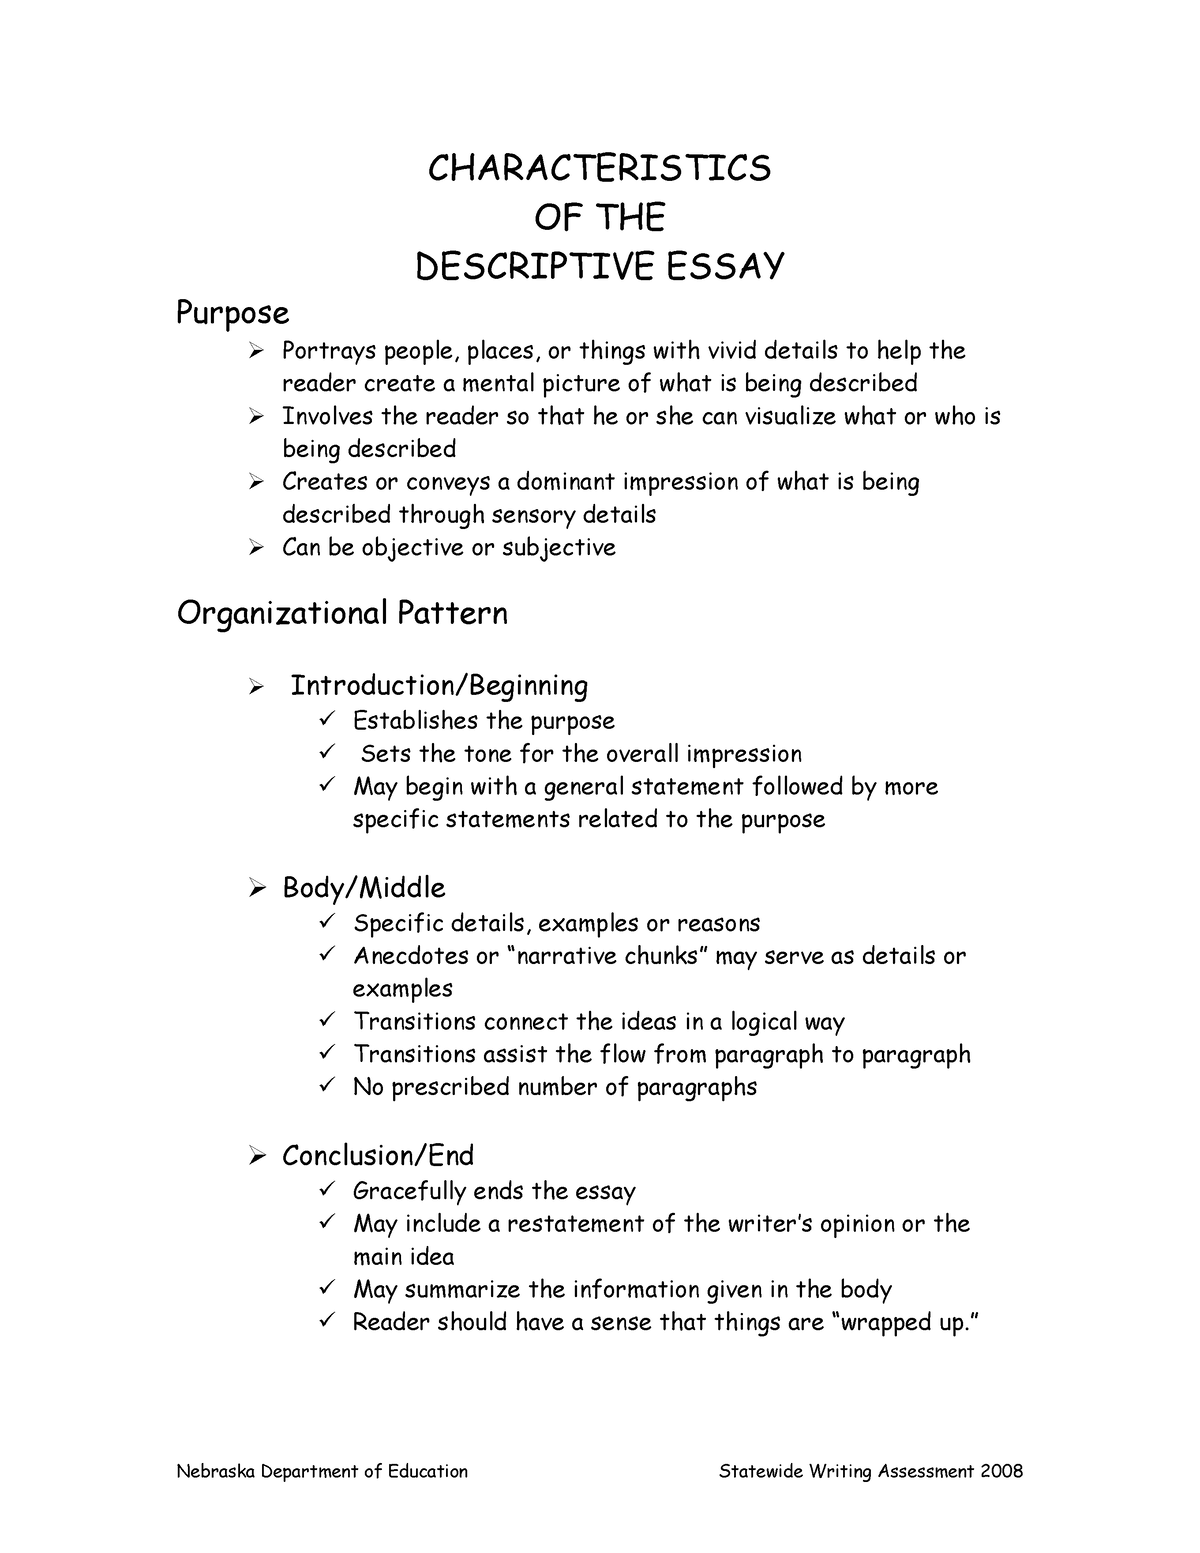 2 characteristics of essay